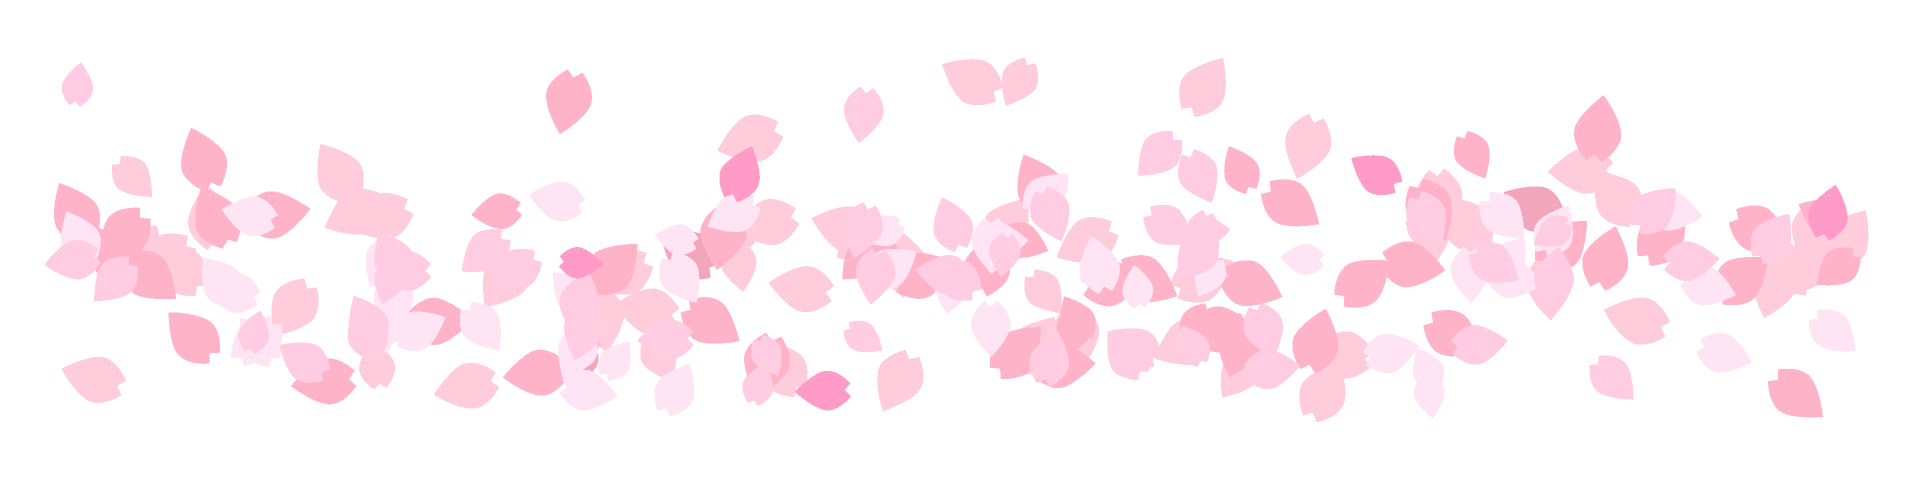 桜吹雪のライン 線 イラスト素材 超多くの無料かわいいイラスト素材